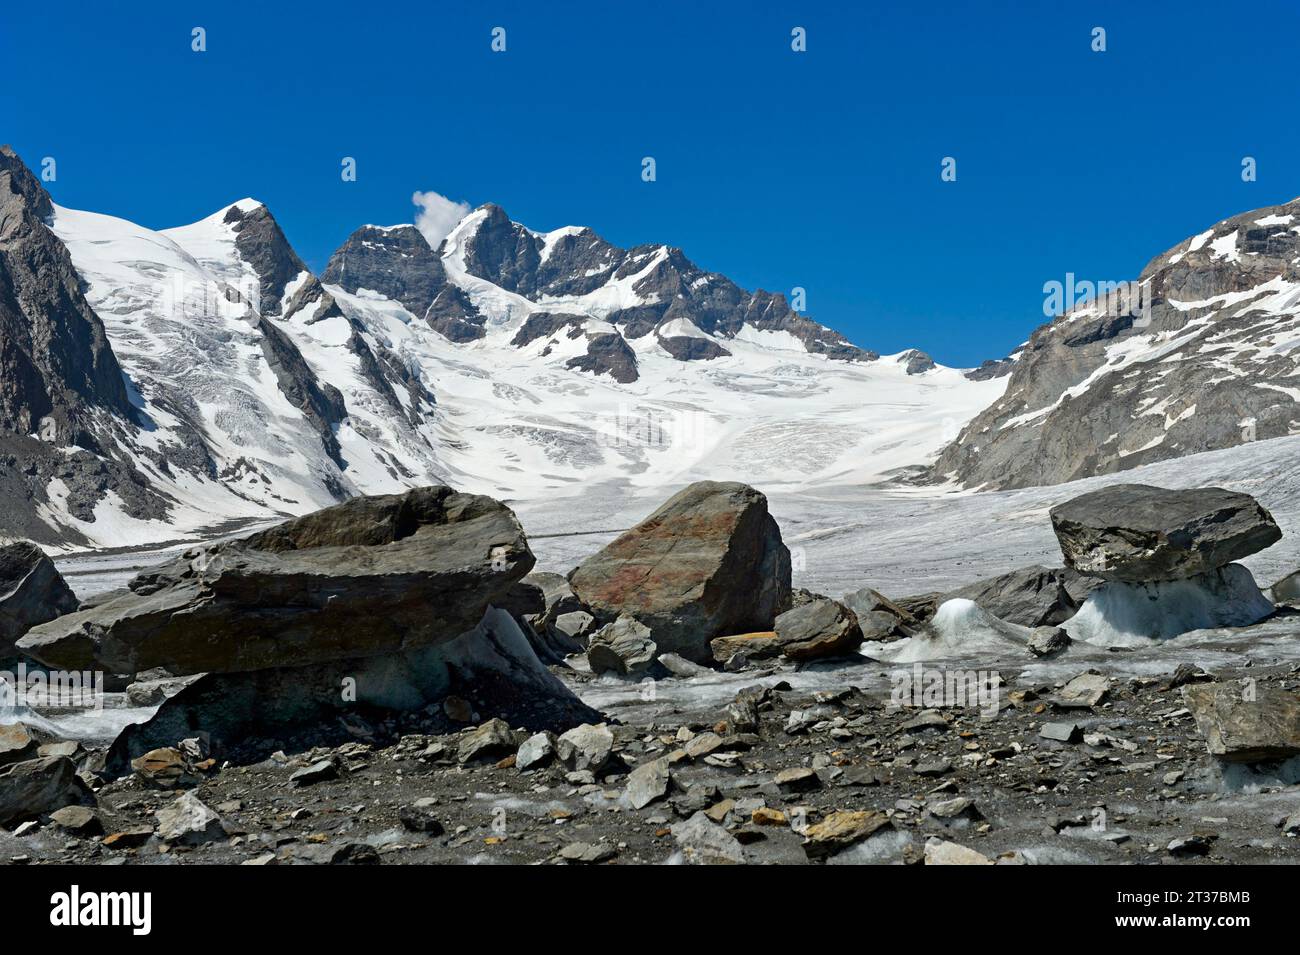 Vue depuis la Konkordiaplatz glaciaire sur le glacier Jungfraufirn jusqu'au sommet de la Jungfrau, région d'Aletsch, Grindelwald, Oberland bernois, Suisse Banque D'Images